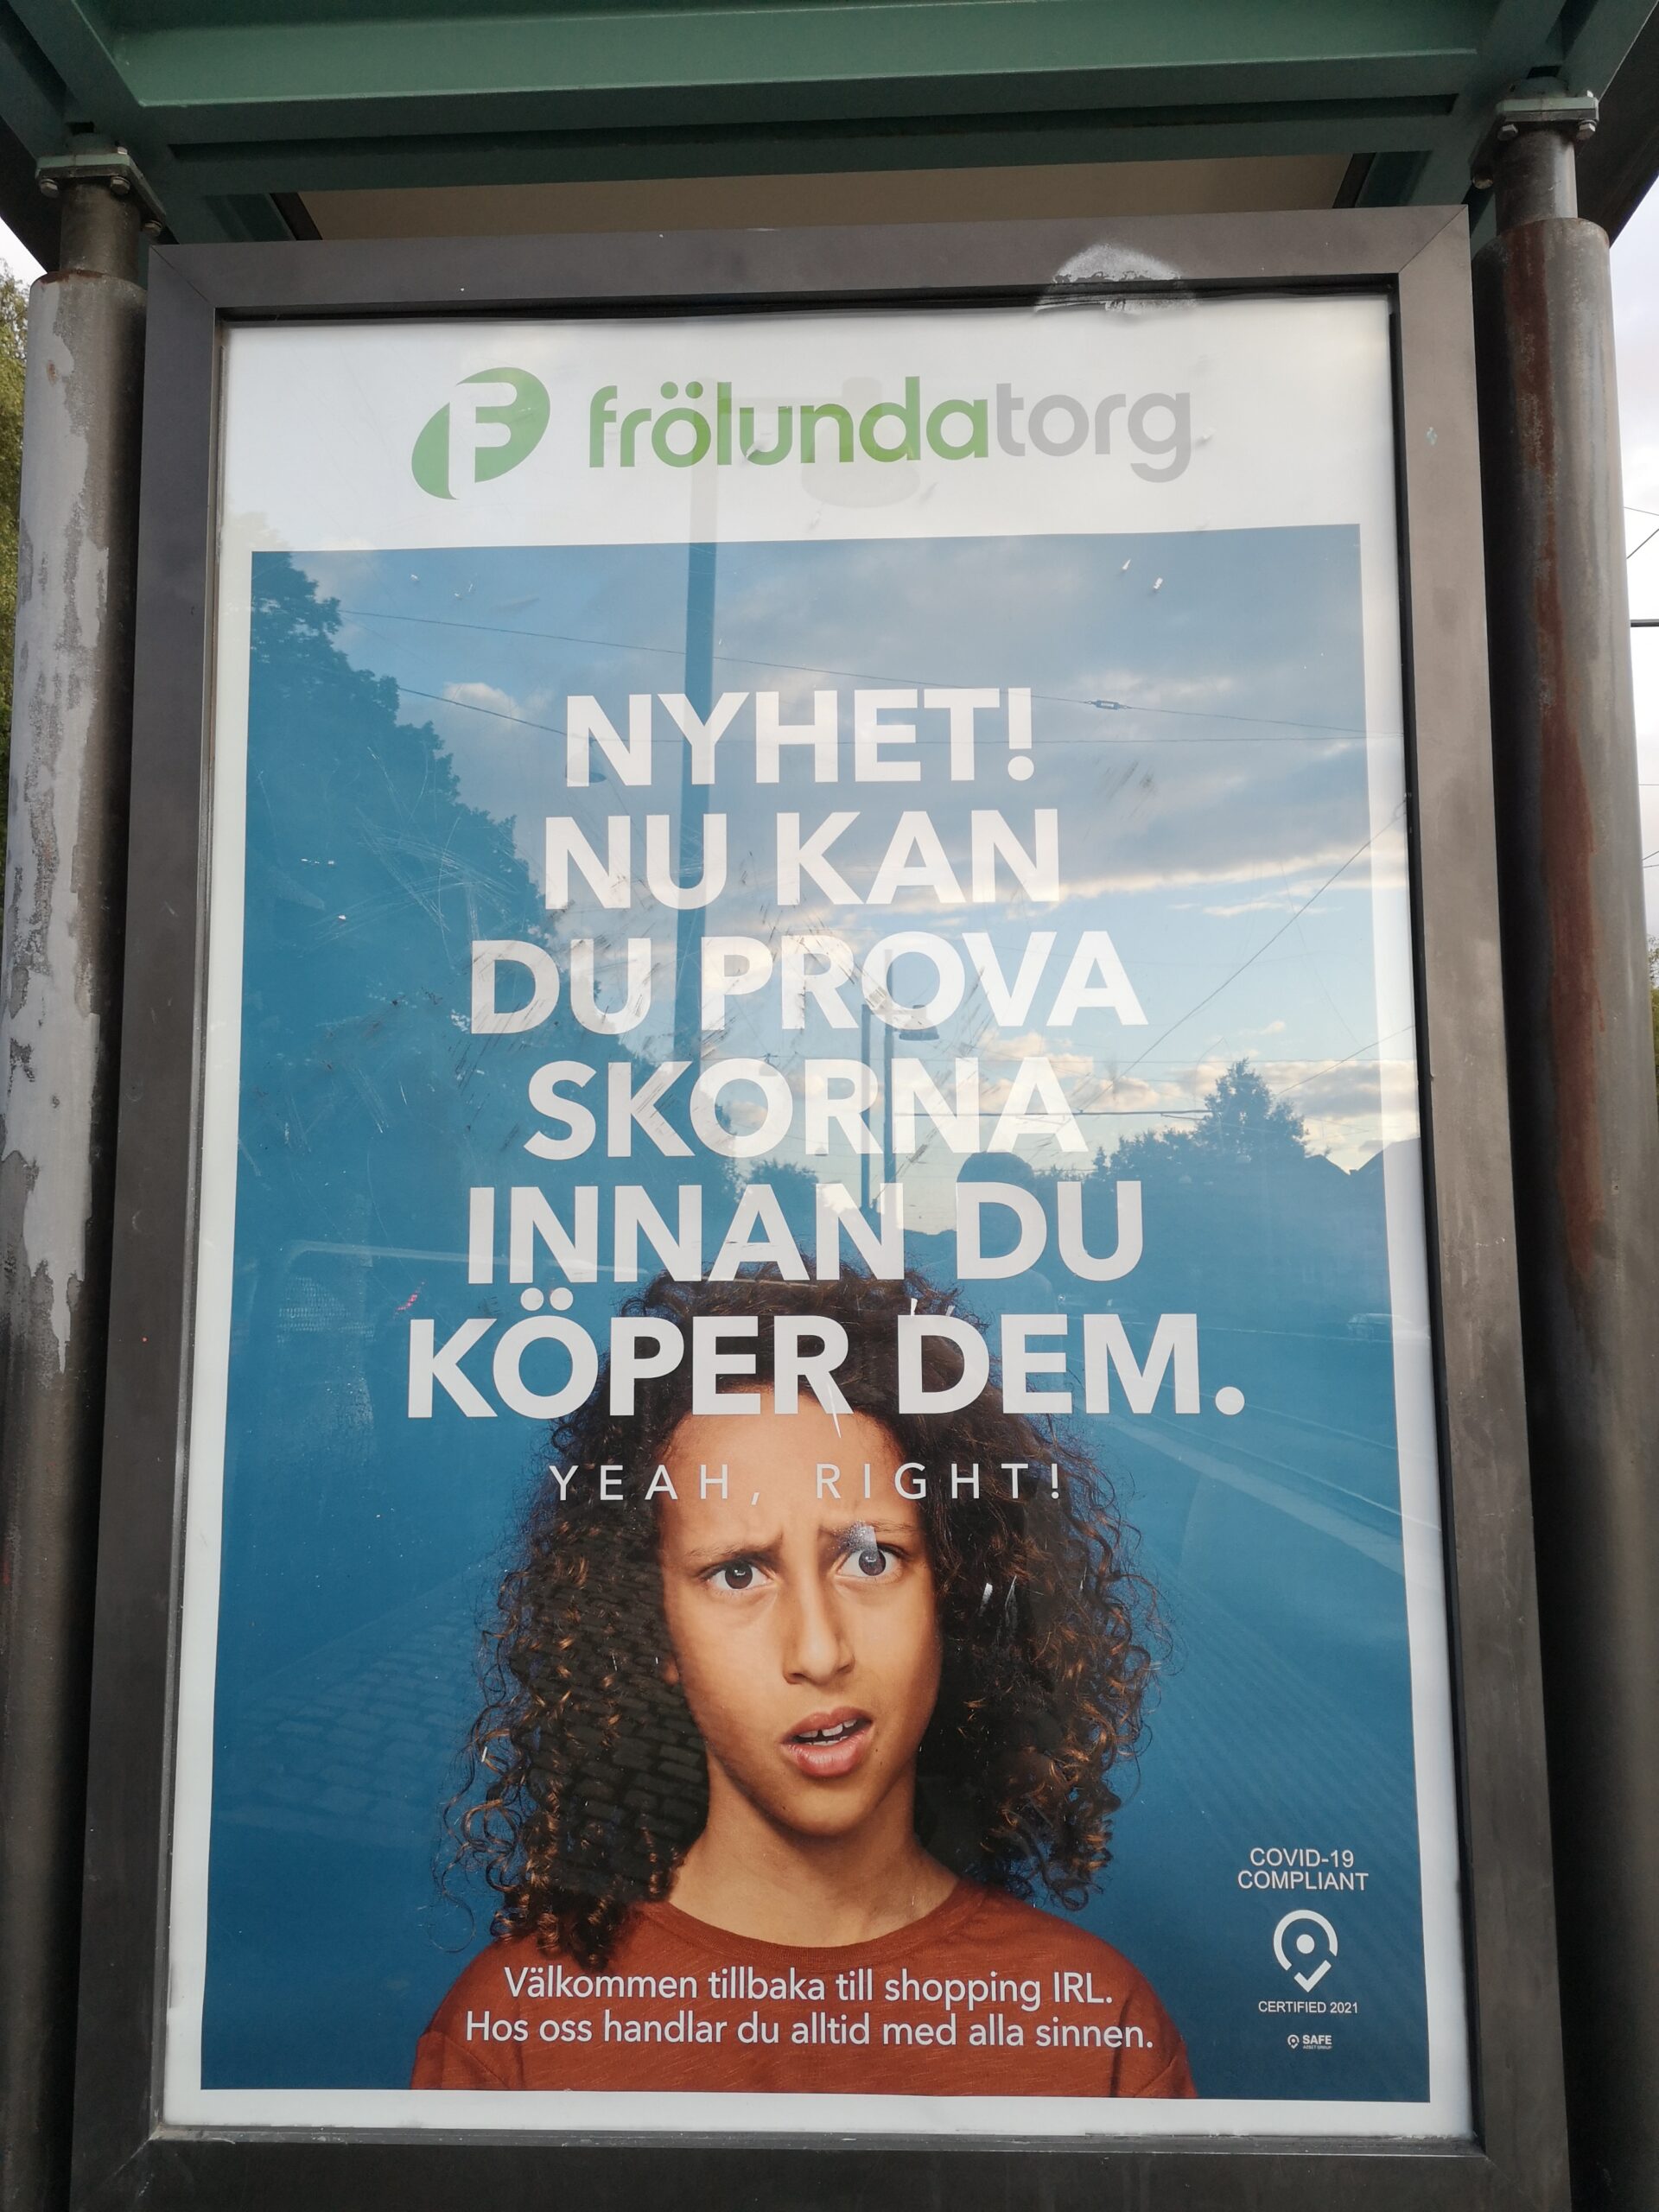 Affisch vid spårvagnshållplats. Under Frölunda torgs logga ett förvånat ansikte och texten "NYHET! NU KAN DU PROVA SKORNA INNAN DU KÖPER DEM"